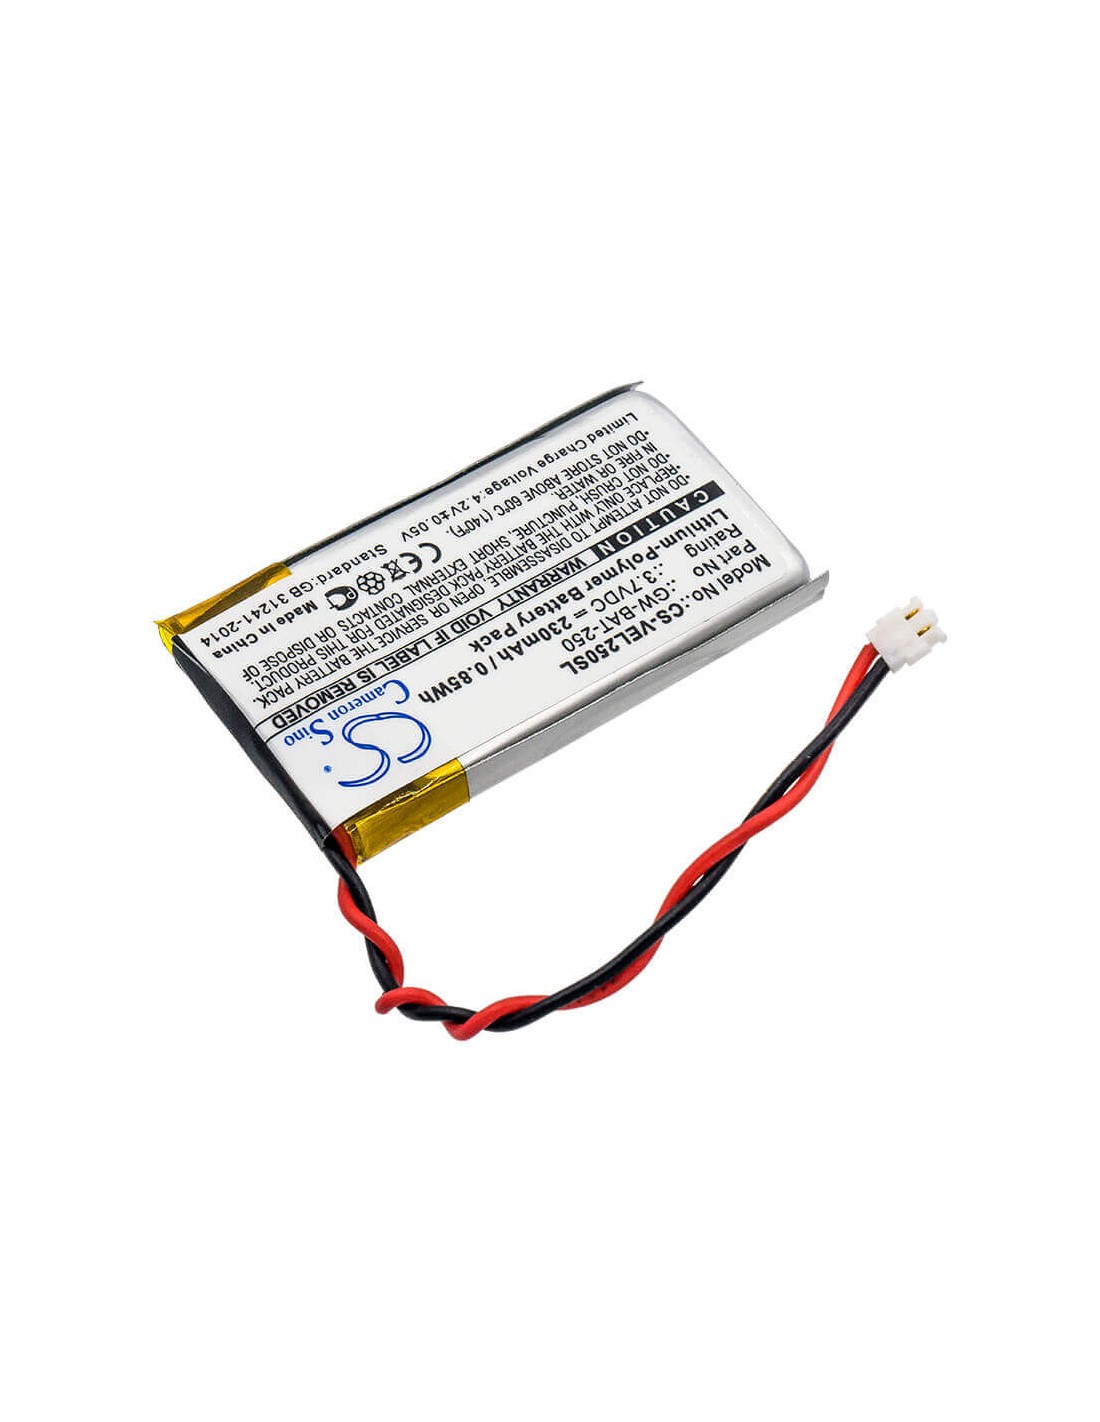 Battery for Vernier, Go Wireless Link 3.7V, 230mAh - 0.85Wh